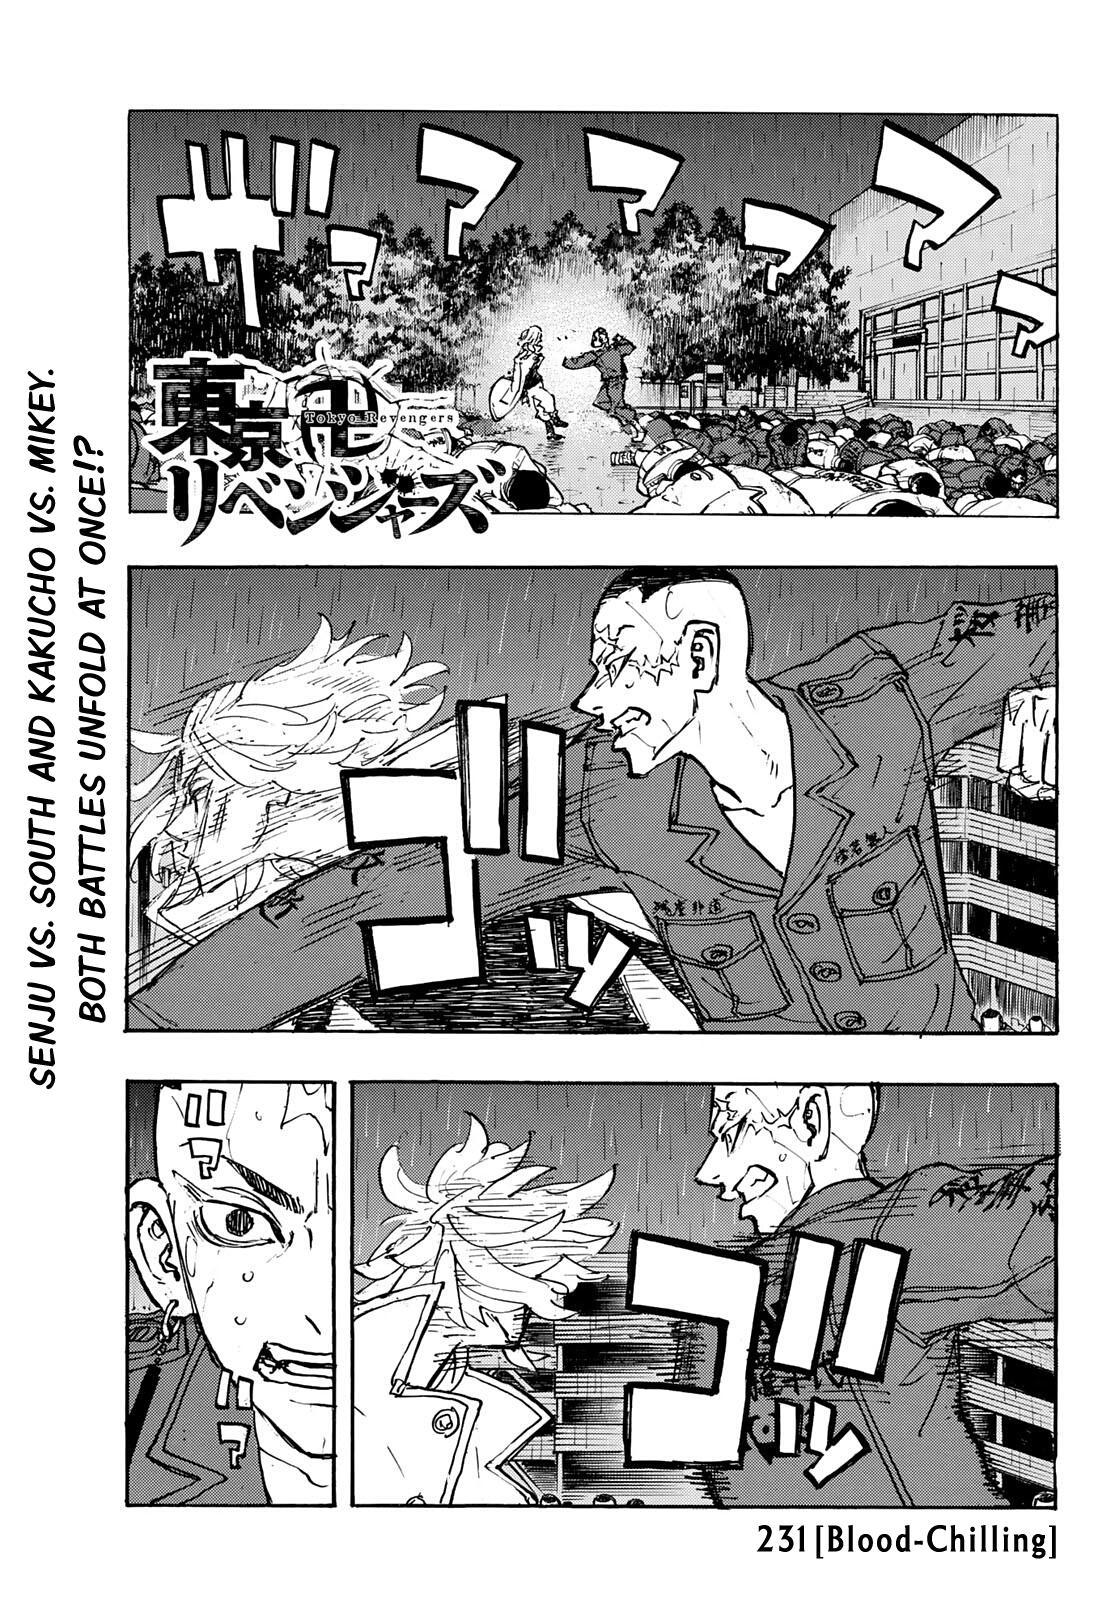 Manga tokyo revengers chapter 1